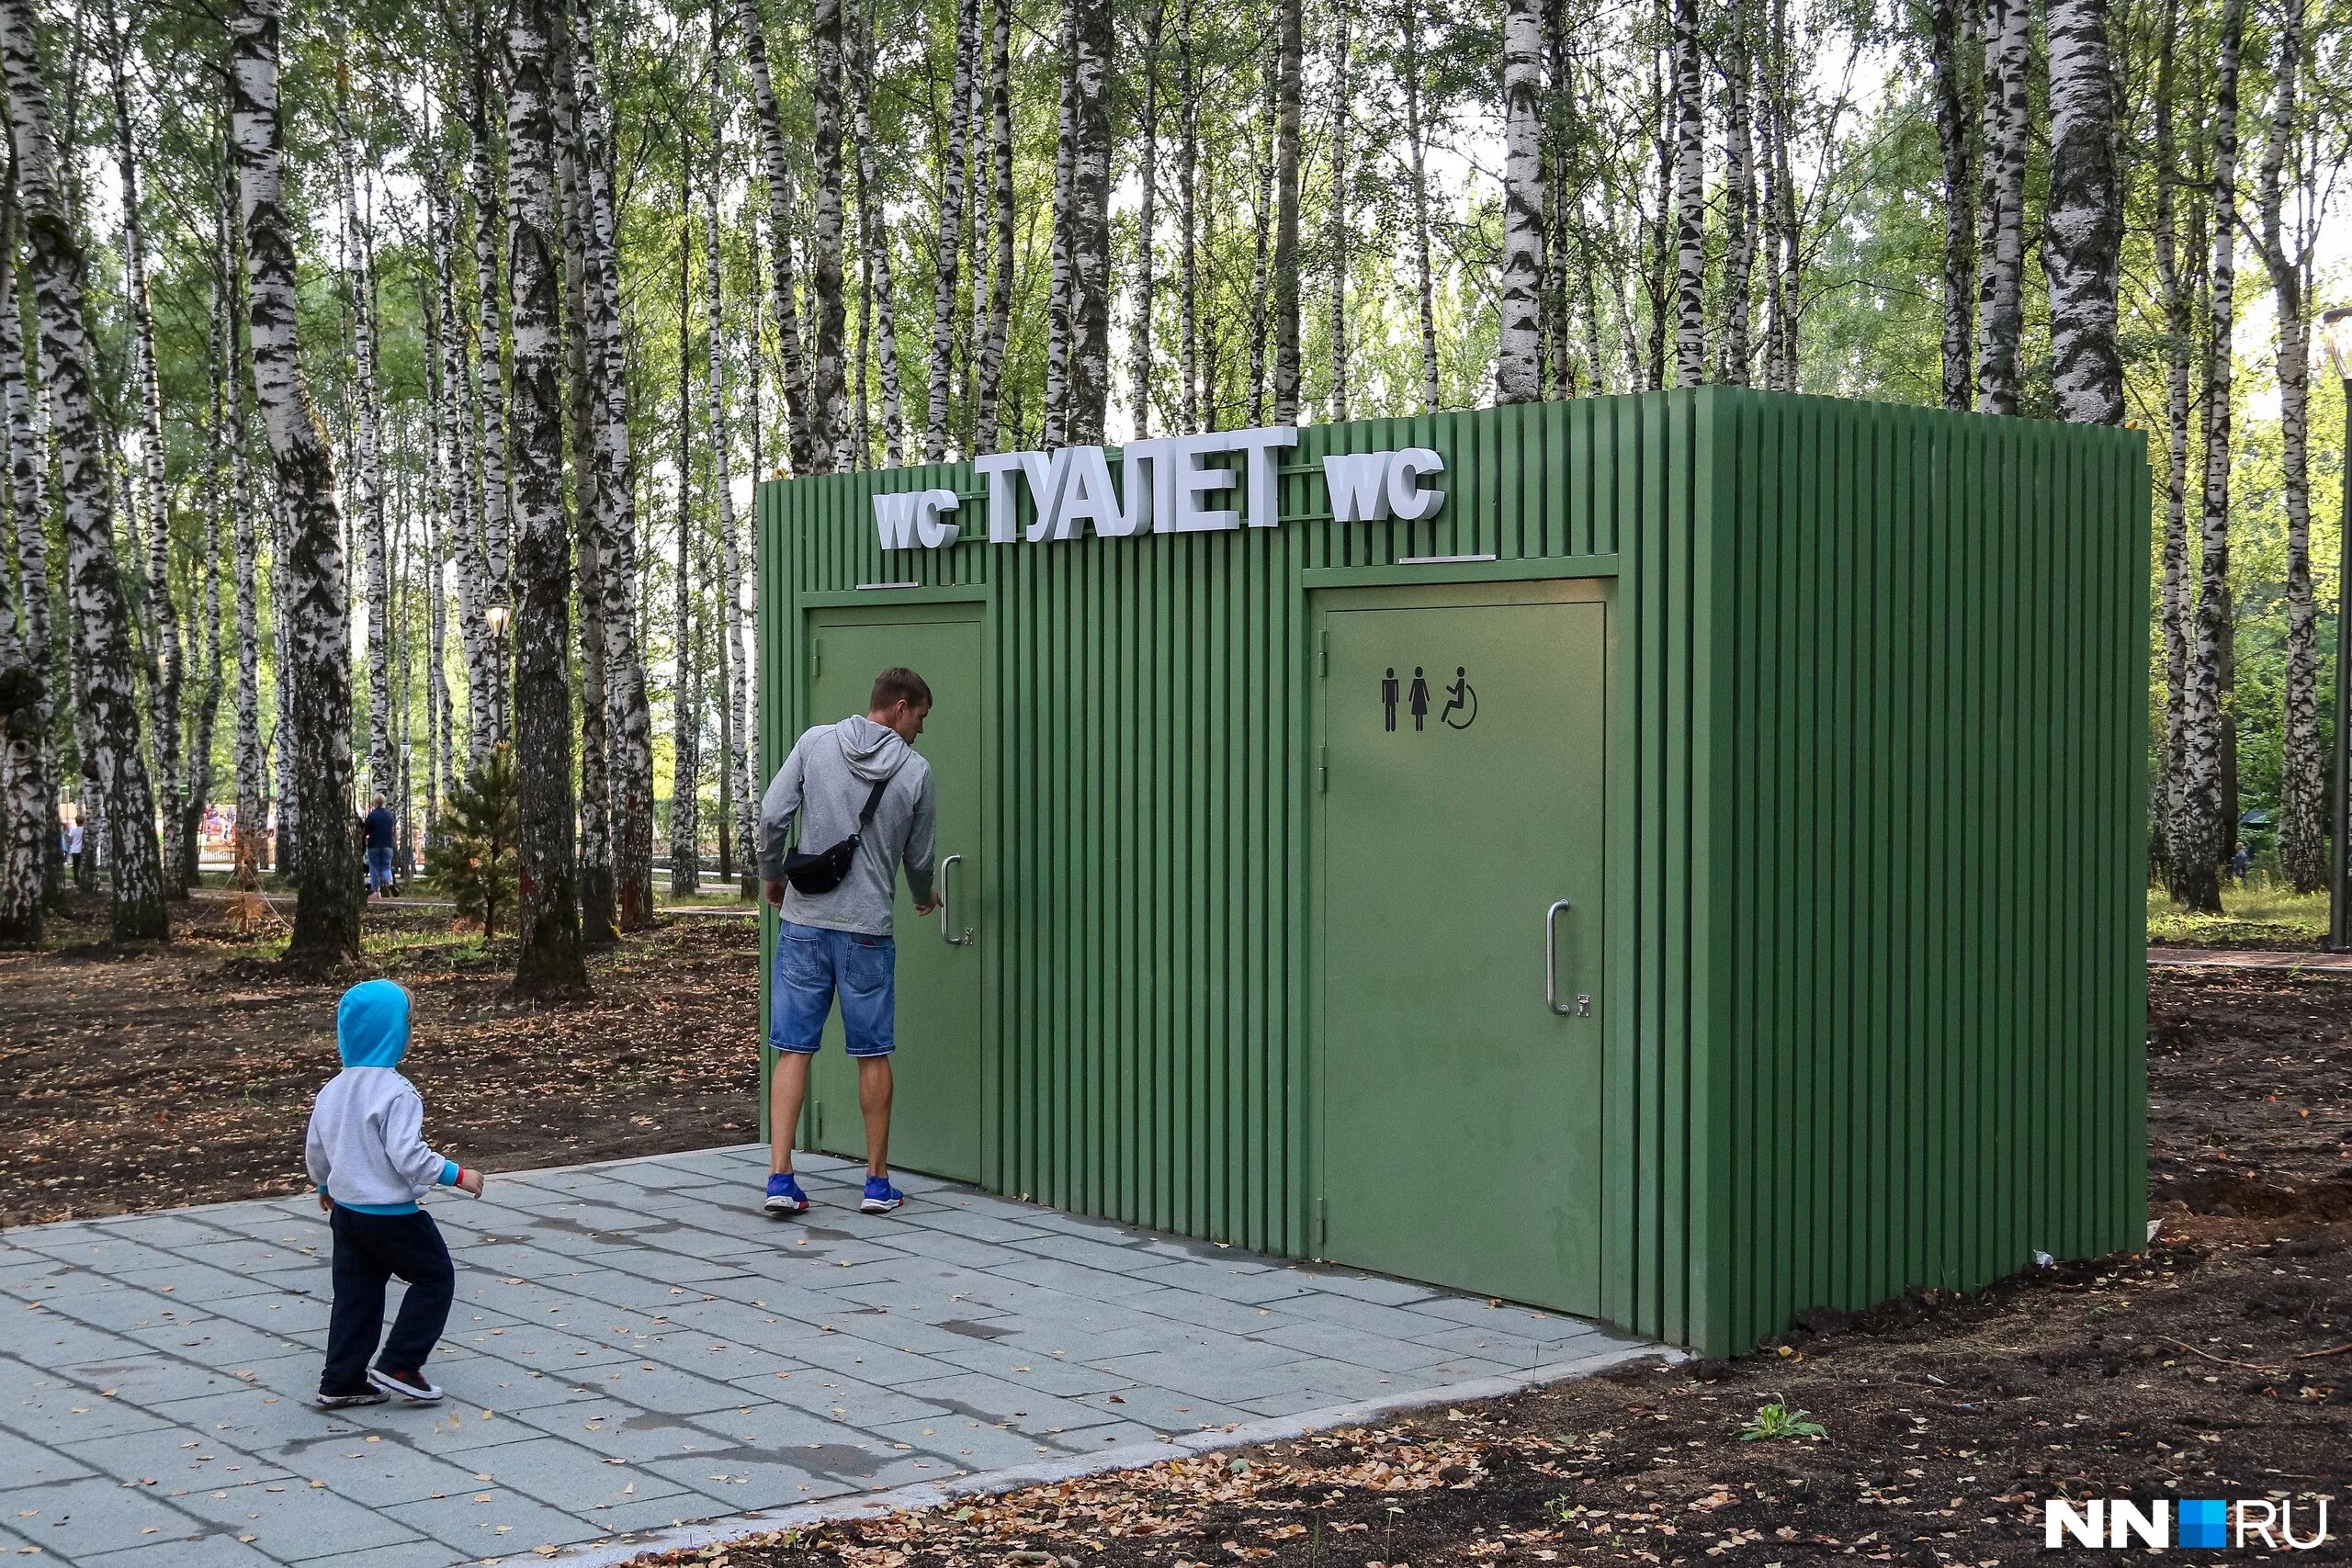 Купить туалетную в нижнем новгороде. Парк Швейцария Нижний Новгород туалет. Общественный туалет. Туалеты в парках. Общественный туалет в парке.